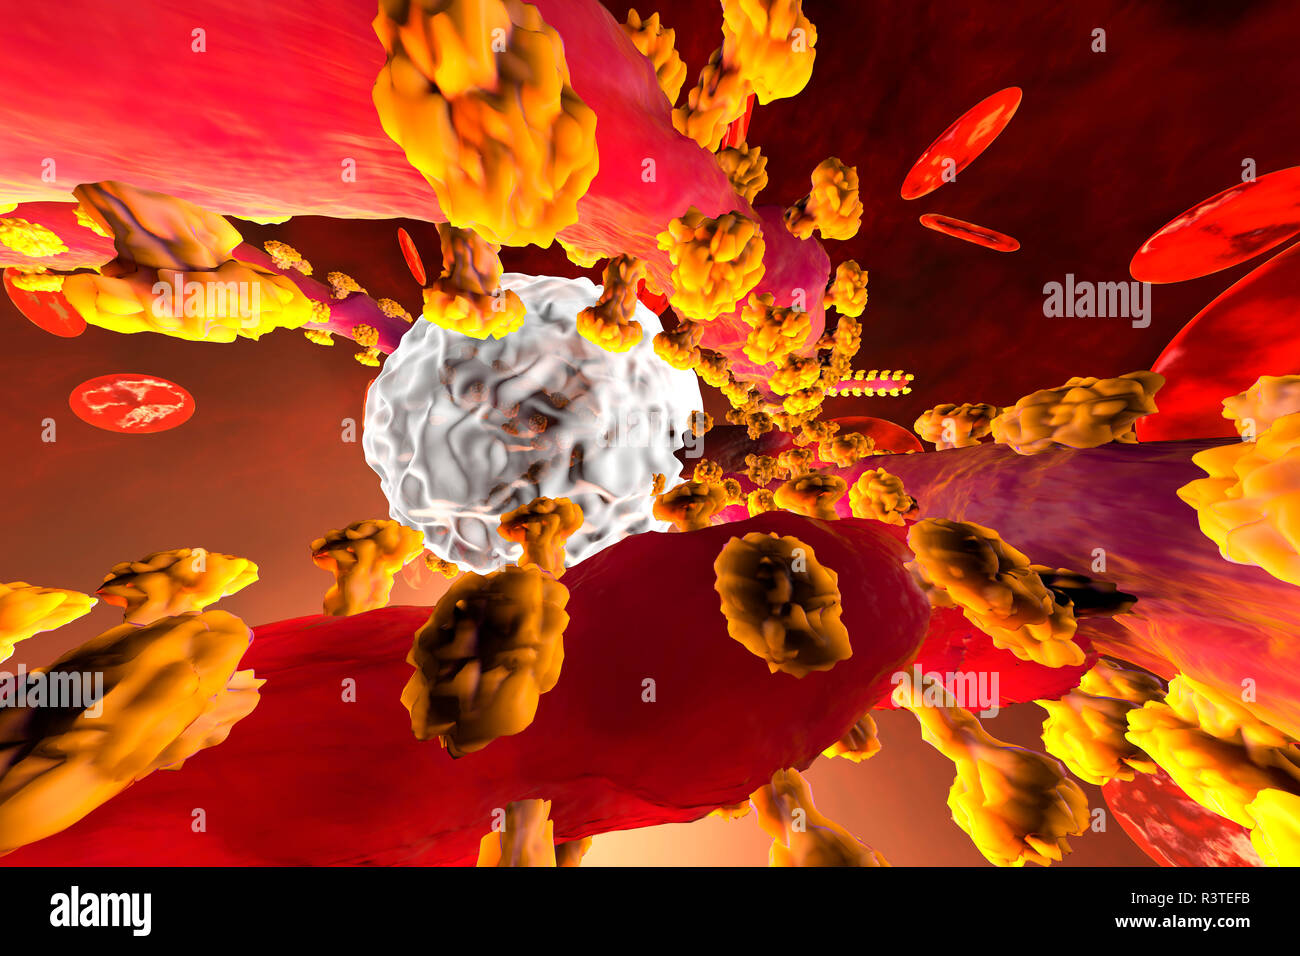 3D-Darstellung eines Ebola Virus kämpfen mit leukozyten Abwehrzellen im Blut durch erythrozytären Zellen umgeben Stockfoto